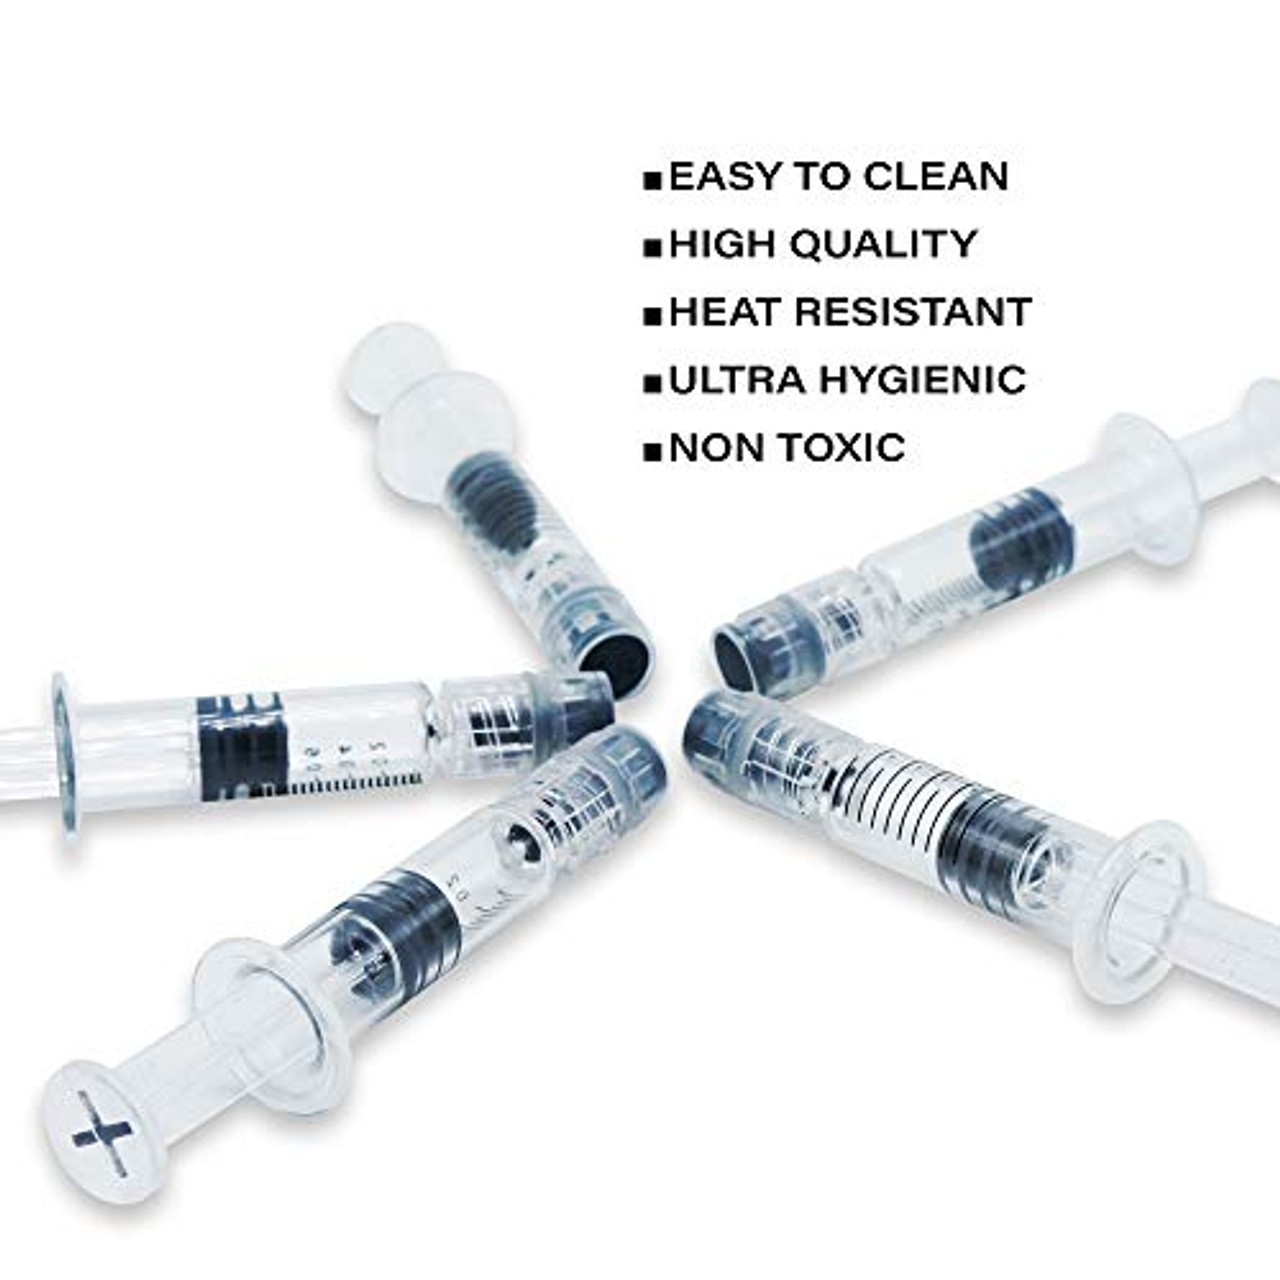 Kopperko 1 Pack (Single) Borosilicate Glass Syringe - 1ml Syringe